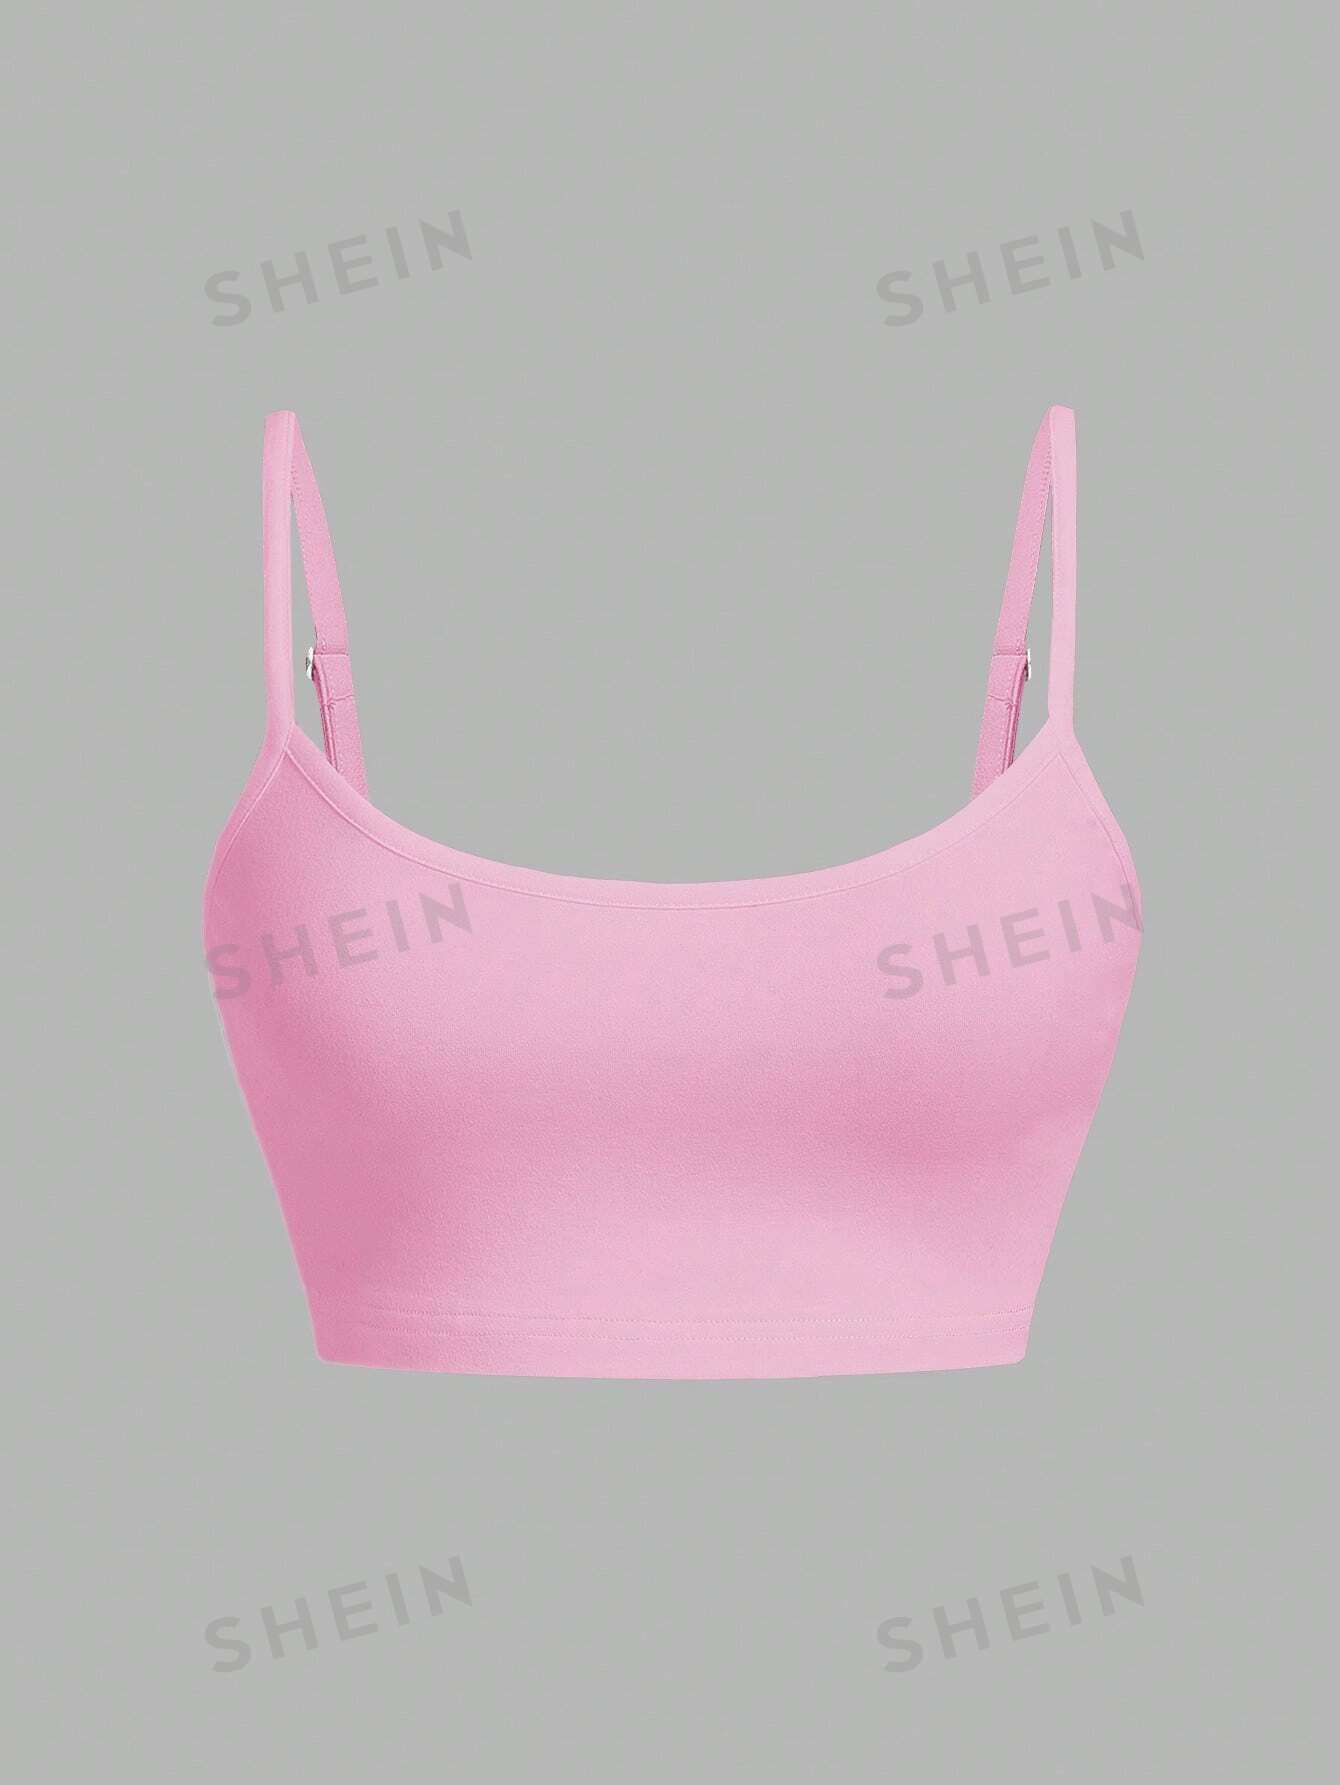 SHEIN Qutie Повседневный и простой короткий сексуальный облегающий топ-бретелька, розовый